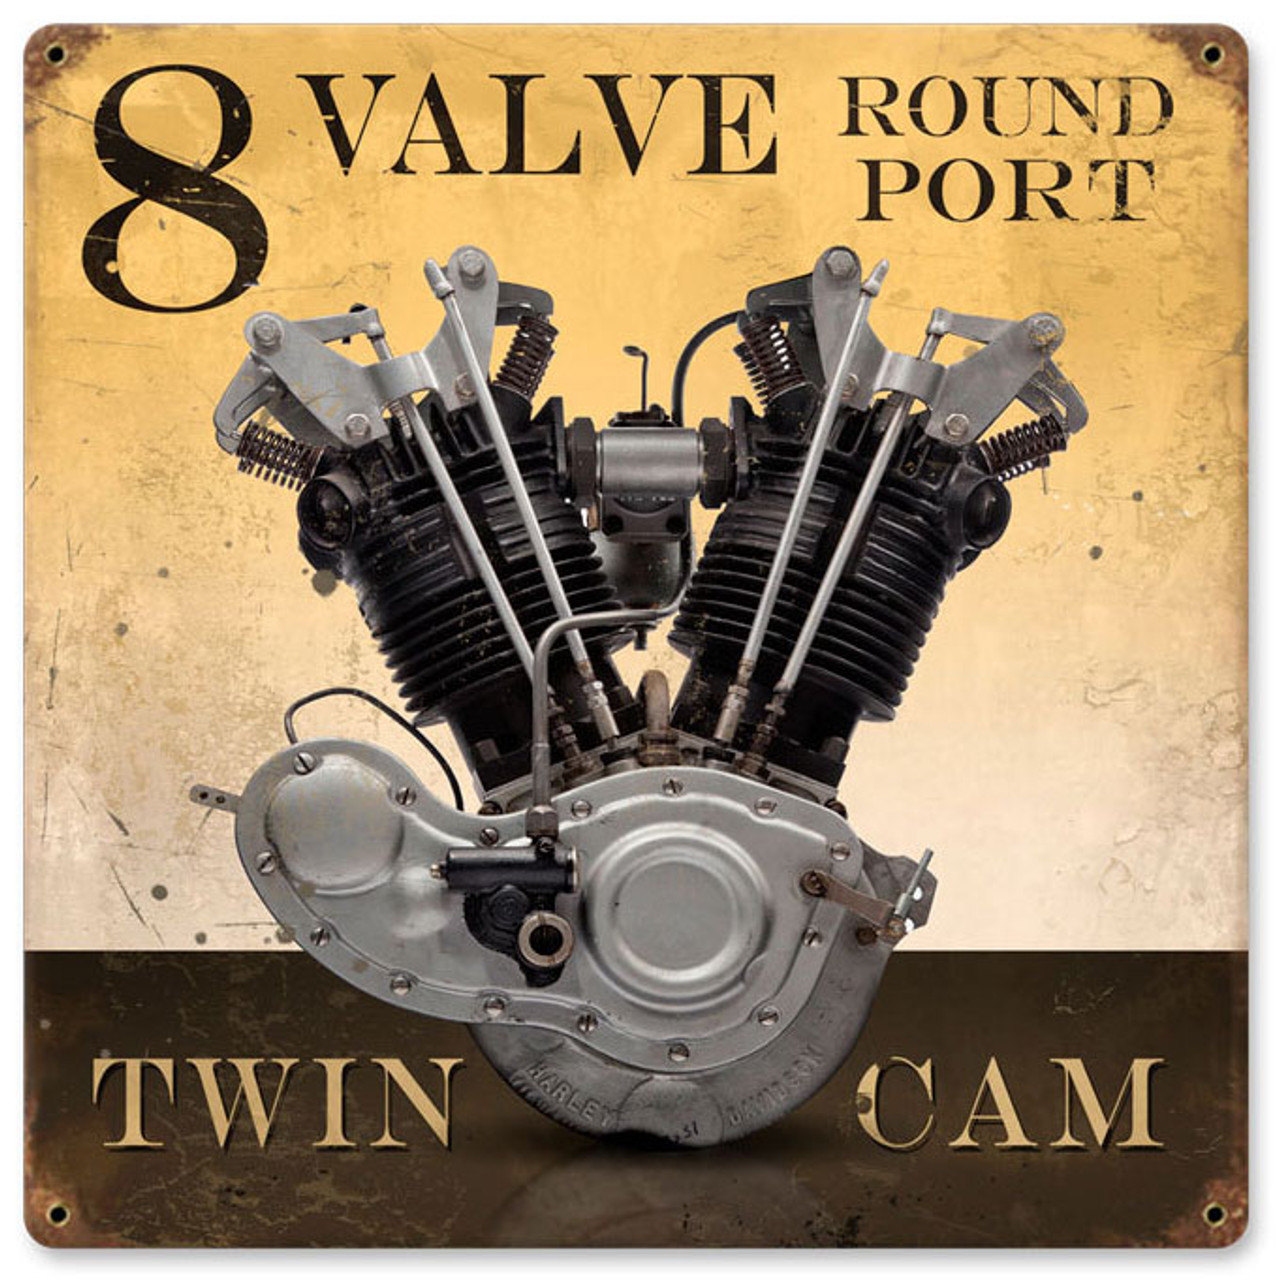 Retro 8 Valve Round Port Metal Sign 12 x 12 Inches